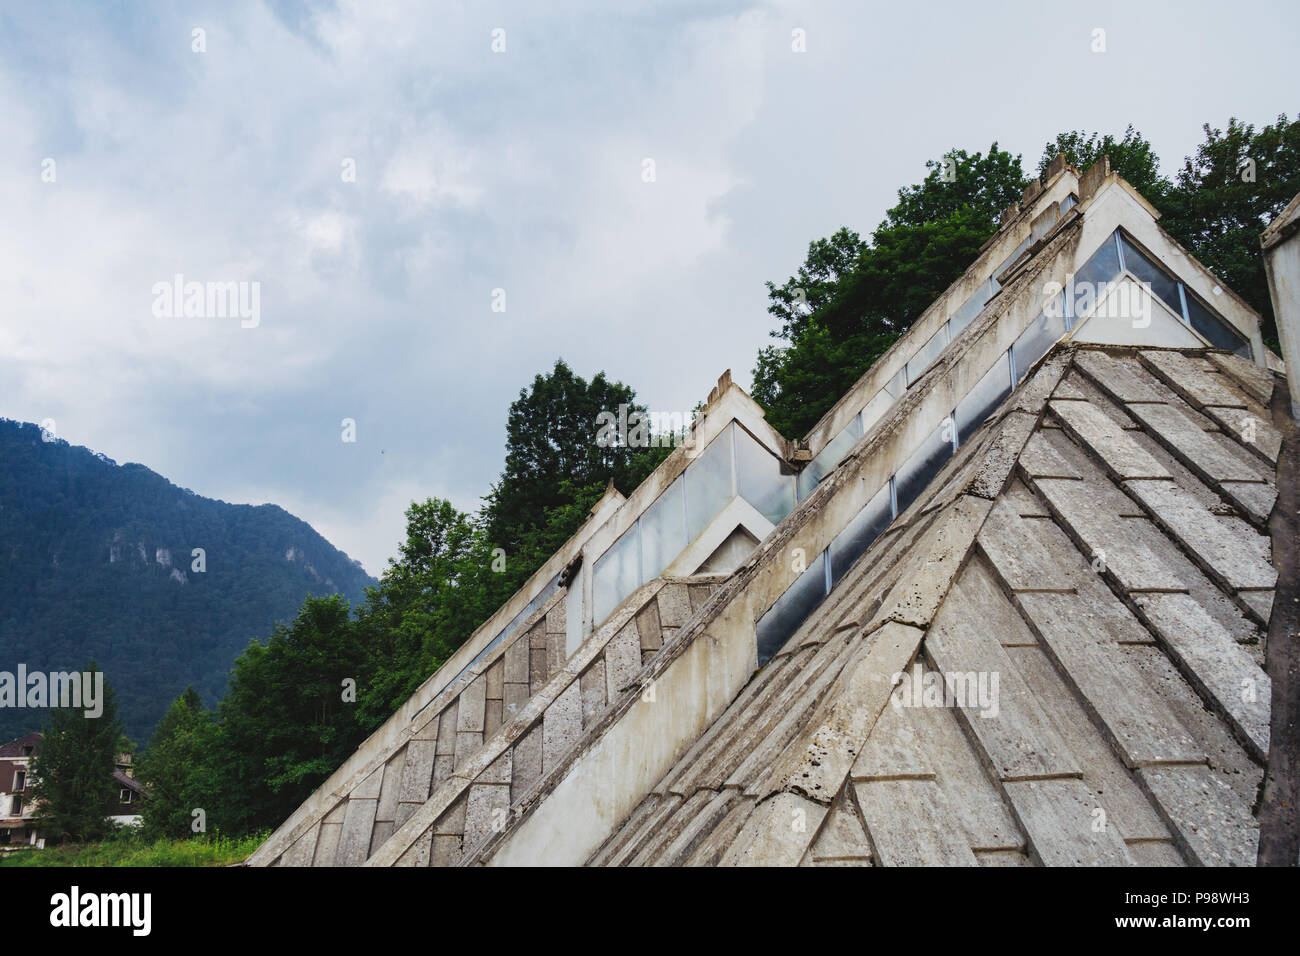 L'inhabituelle triangulaire postmoderne de la lignes Spomen-Dom (mémoire interne) conçu par Ranko Radović dans le Parc National de Sutjeska, BiH Banque D'Images